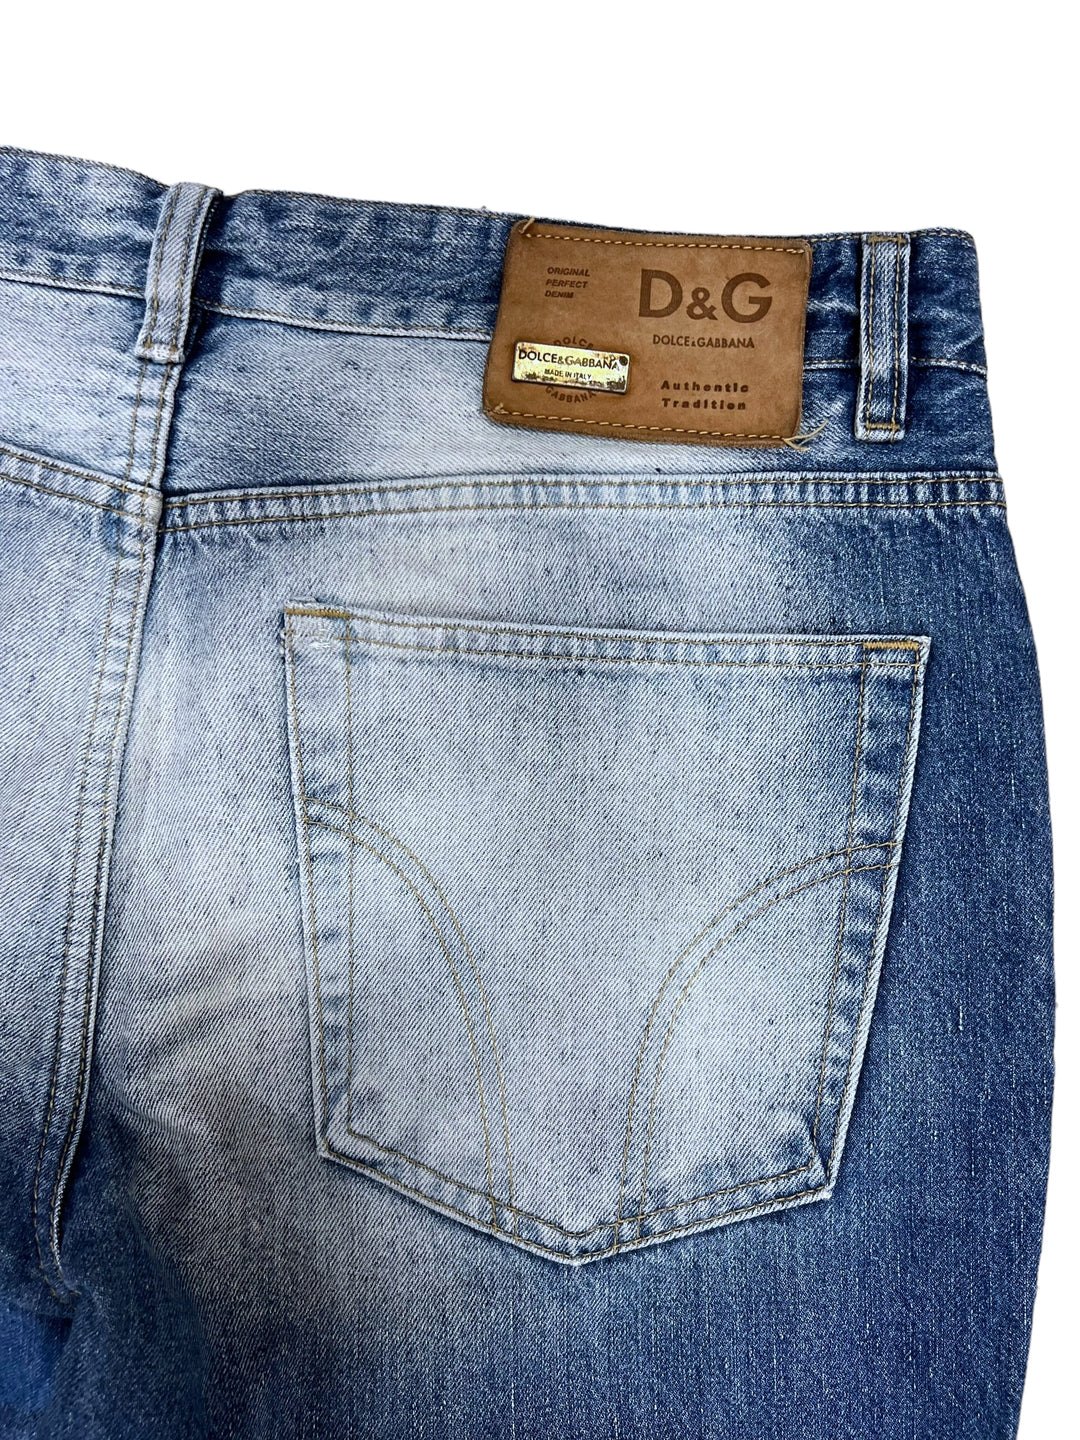 Dolce & Gabbana vintage jeans men’s Large(36)